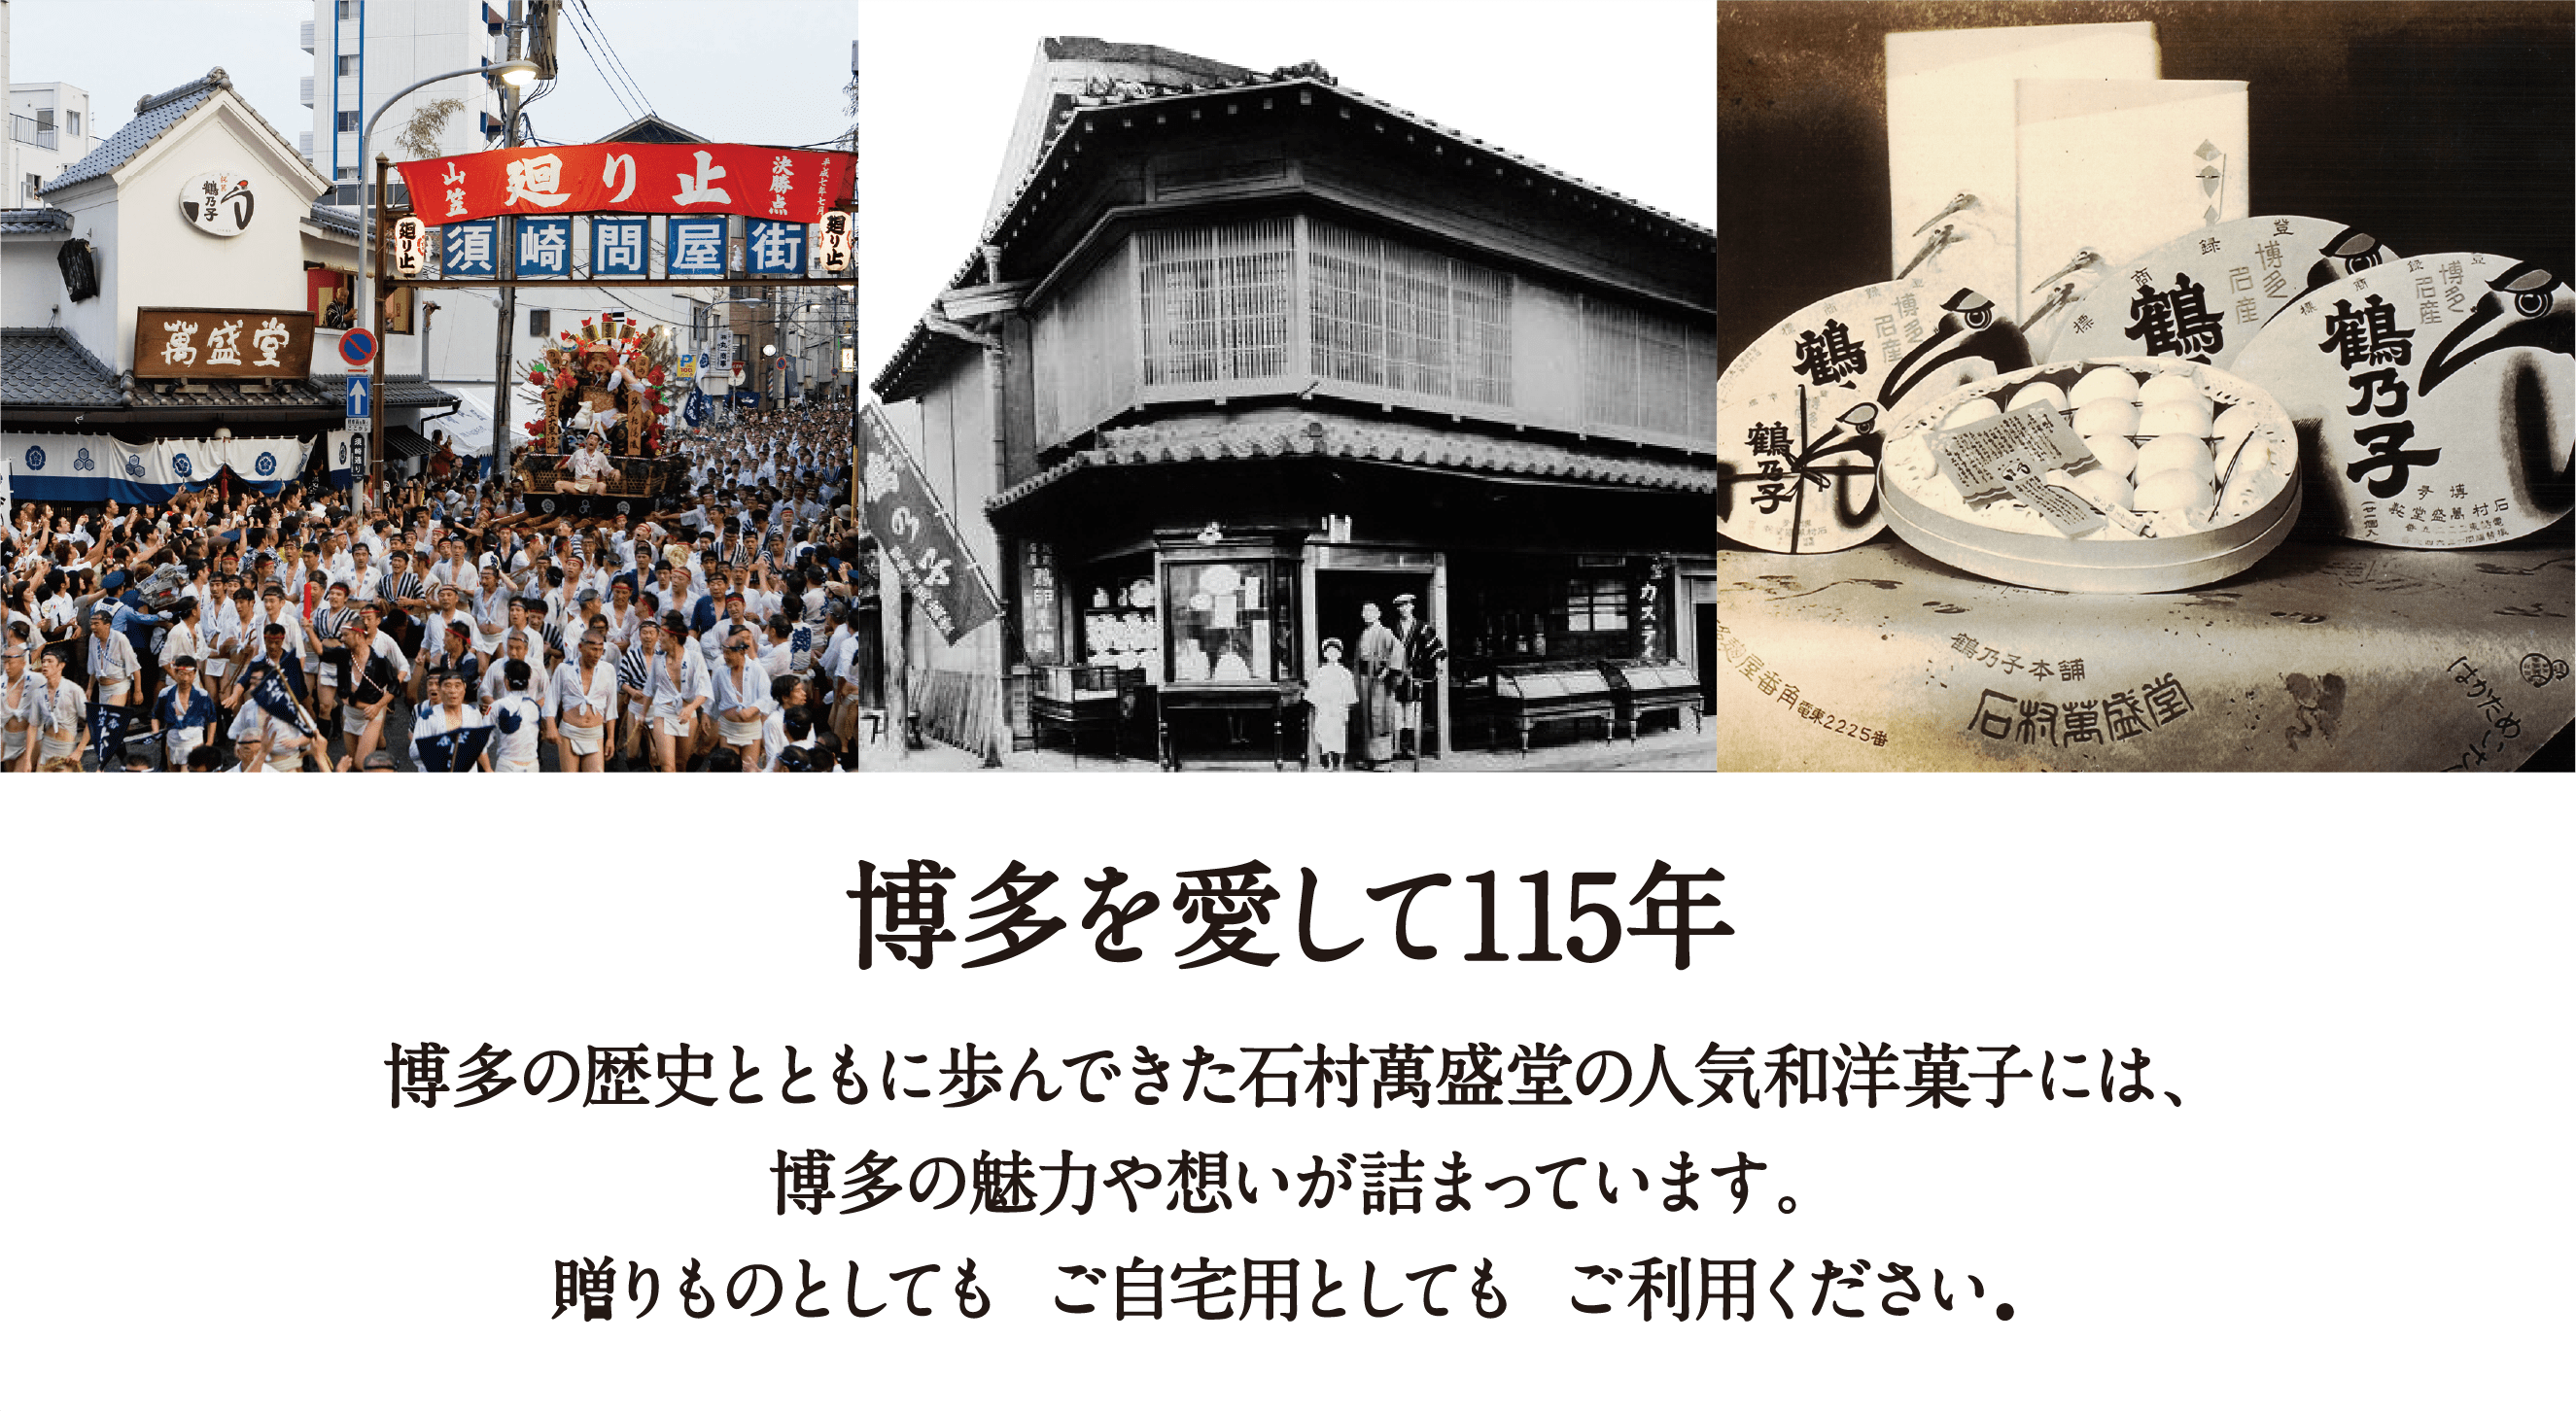 博多を愛して115年 博多の歴史とともに歩んできた石村萬盛堂の人気和洋菓子には、博多の魅力や想いが詰まっています。贈りものとしても、ご自宅用としても、ご利用ください。